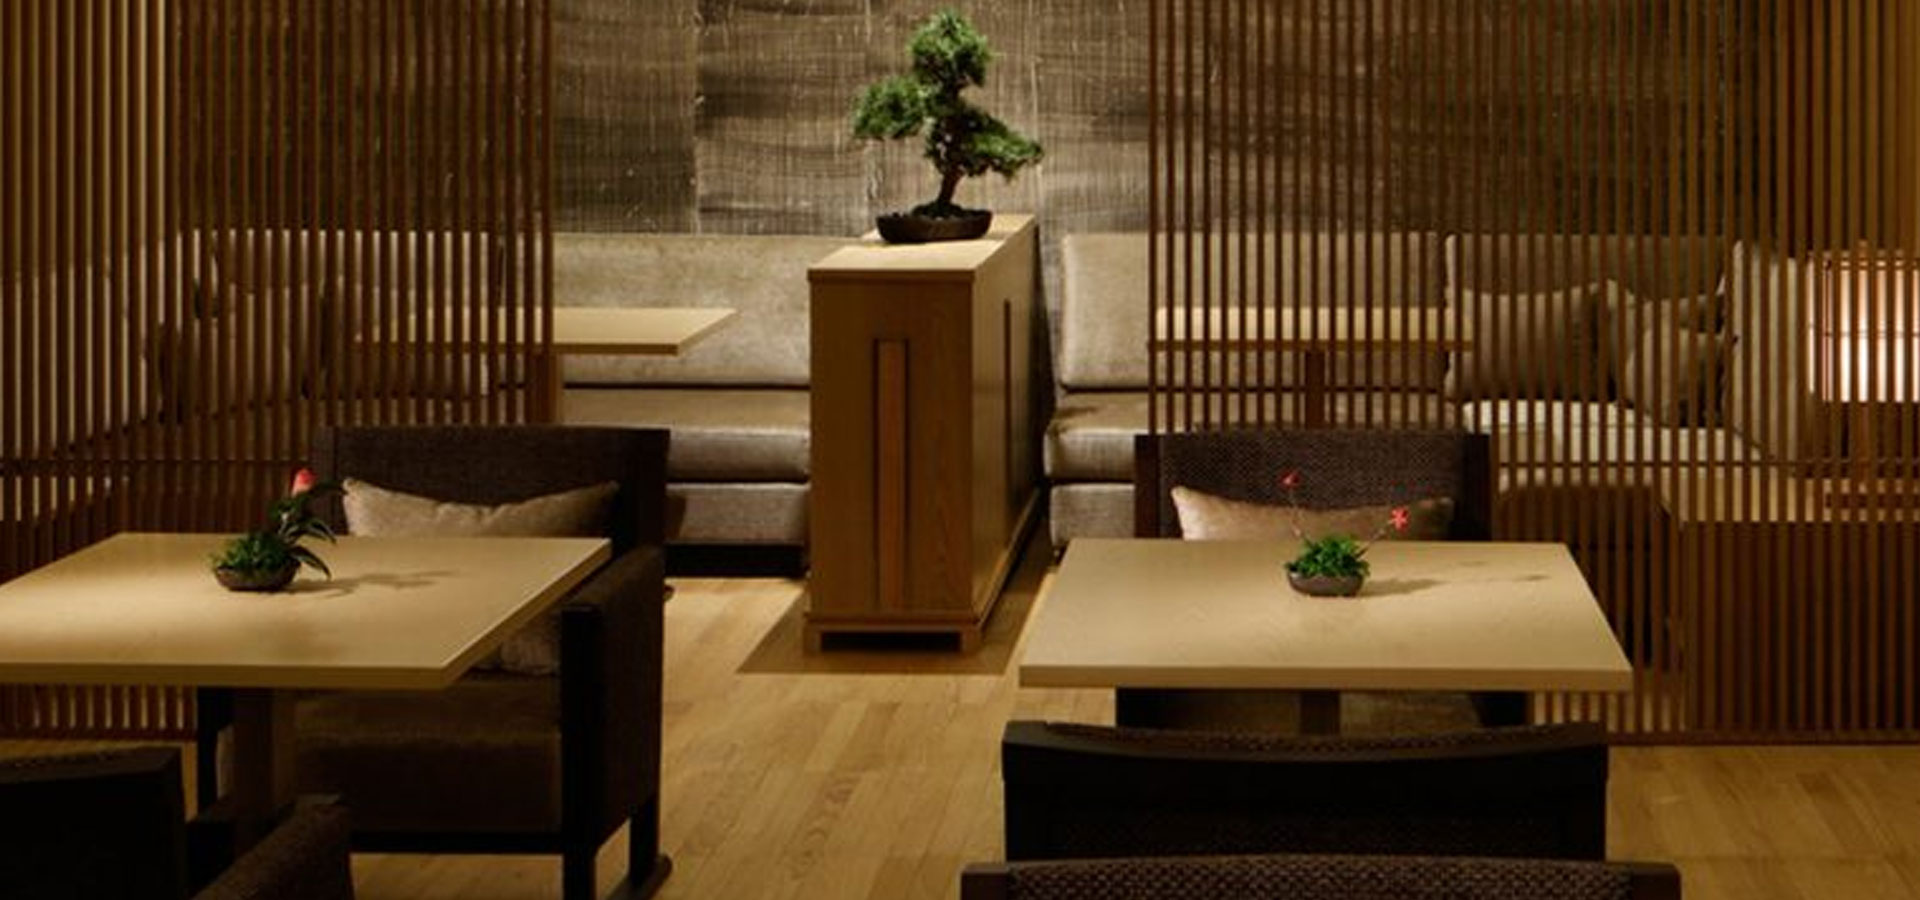 高輪花香路 TAKANAWA HANAKOHRO- 高輪格蘭王子大飯店內新設了共有16間的“旅館”